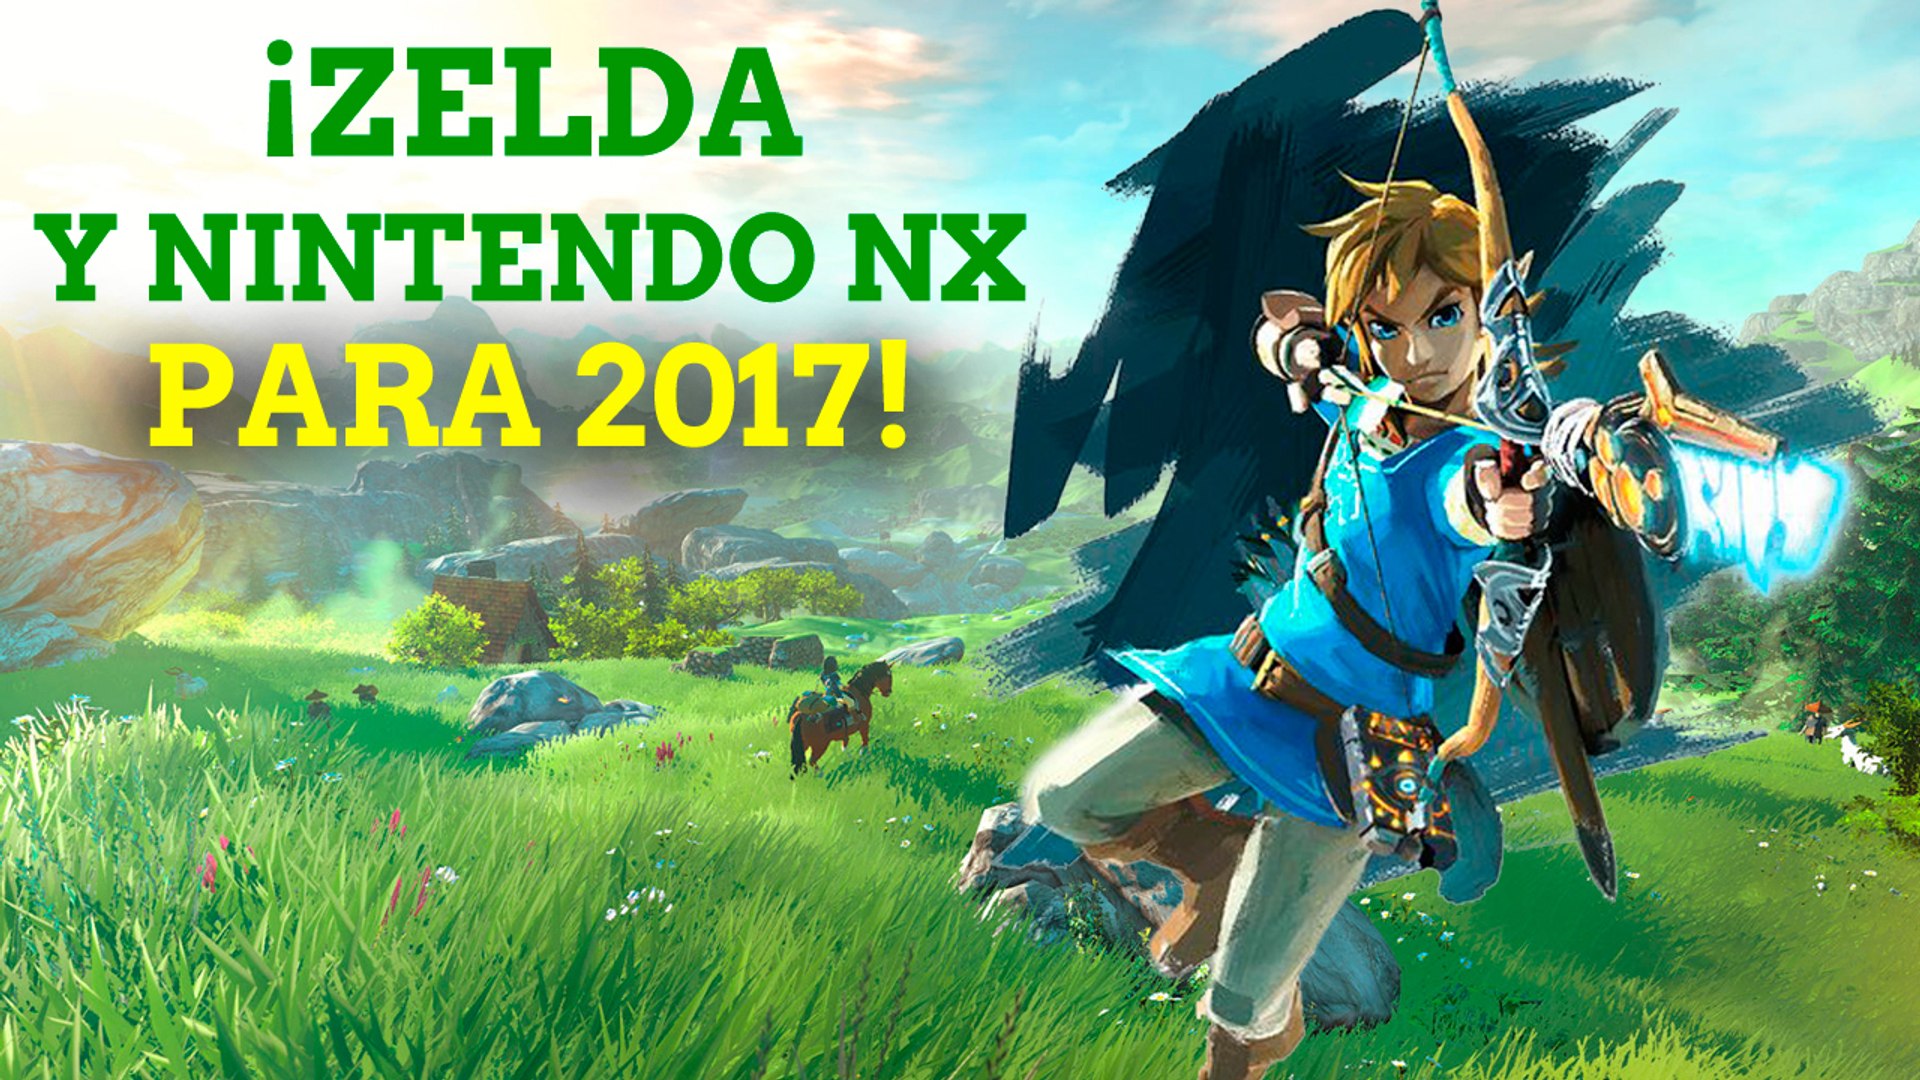 Zelda y Nintendo NX para 2017 - Vídeo Dailymotion